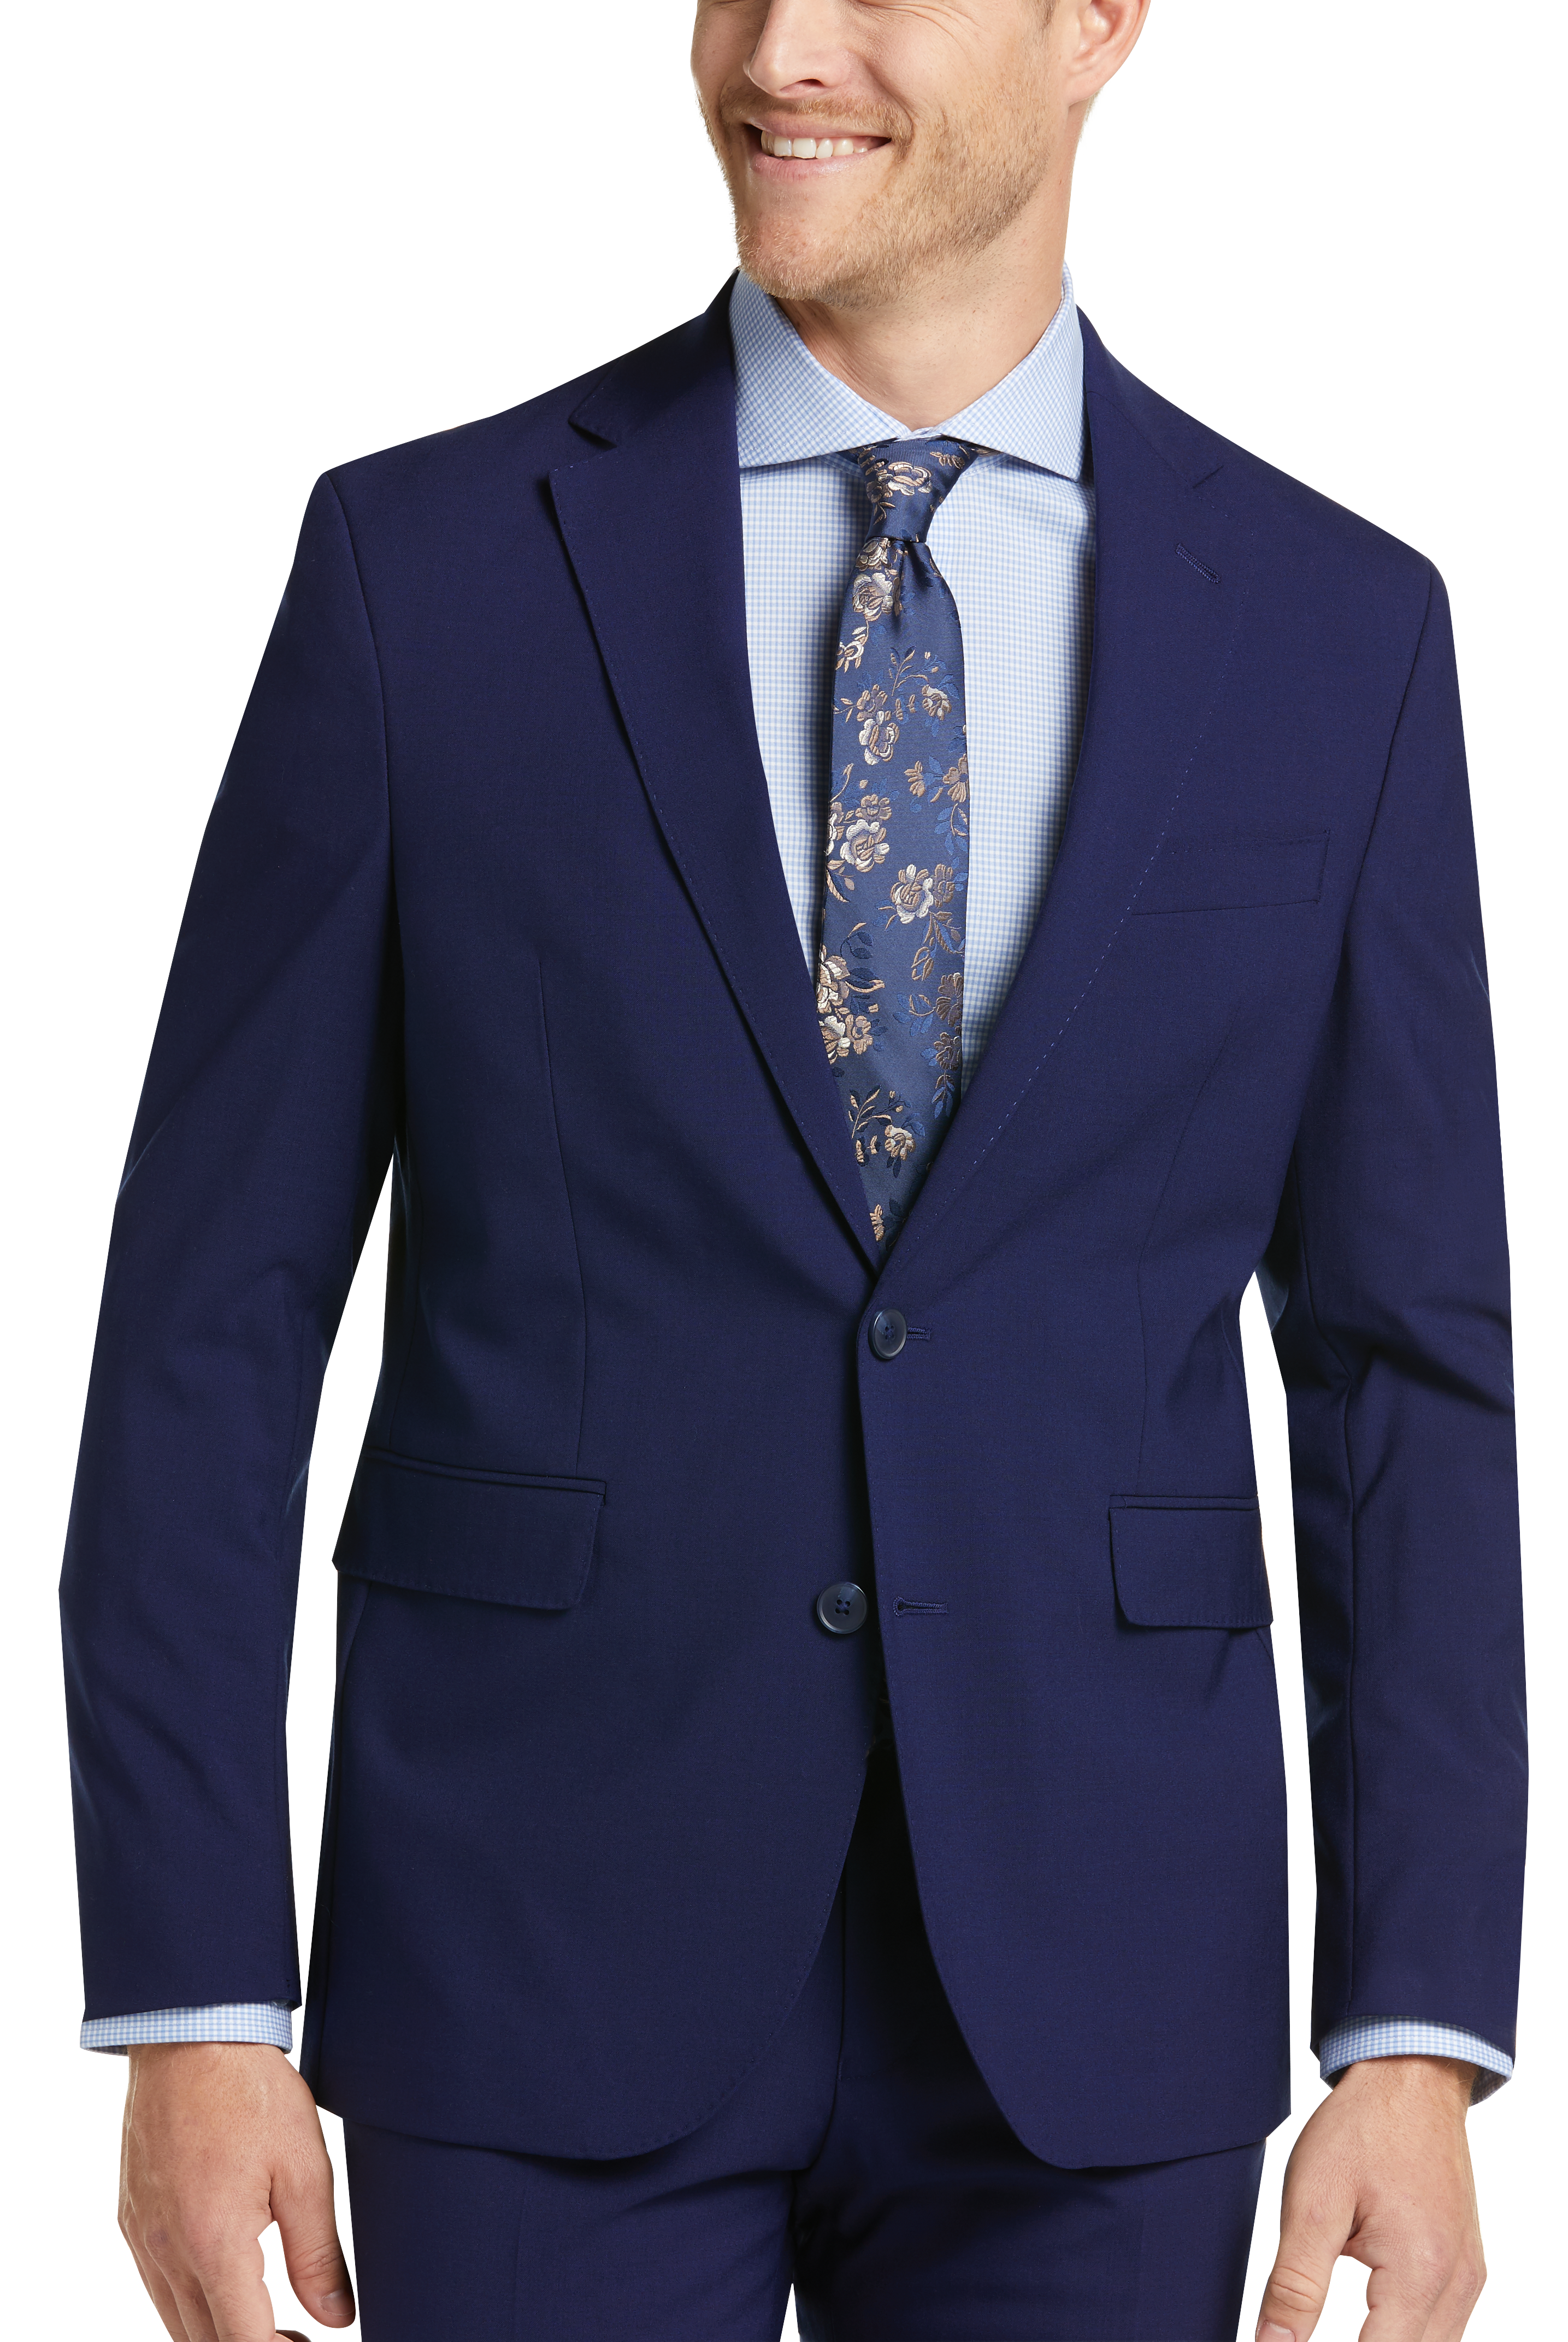 Cole Haan Grand.ØS Blue Slim Fit Suit 